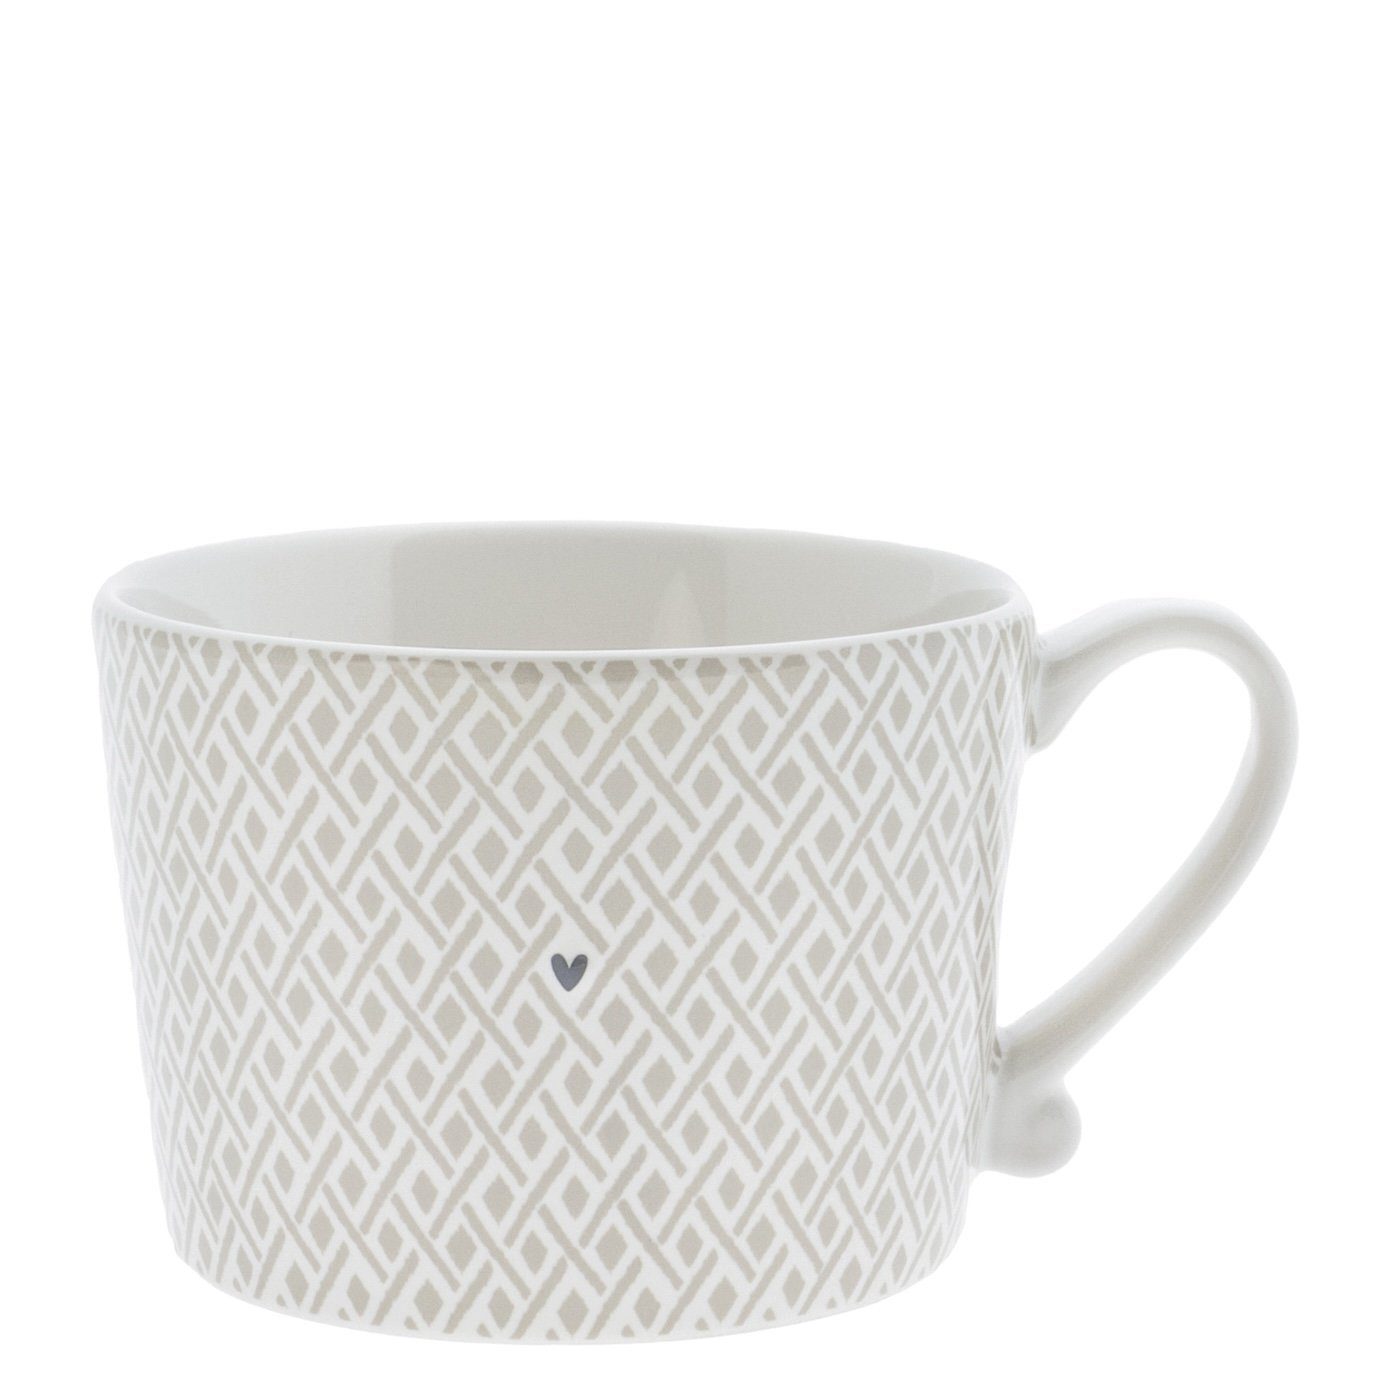 Collections Check Tasse mit handbemalt (RJ/CUP Tasse weiß Keramik BT), Henkel Bastion Keramik, Little titane 112